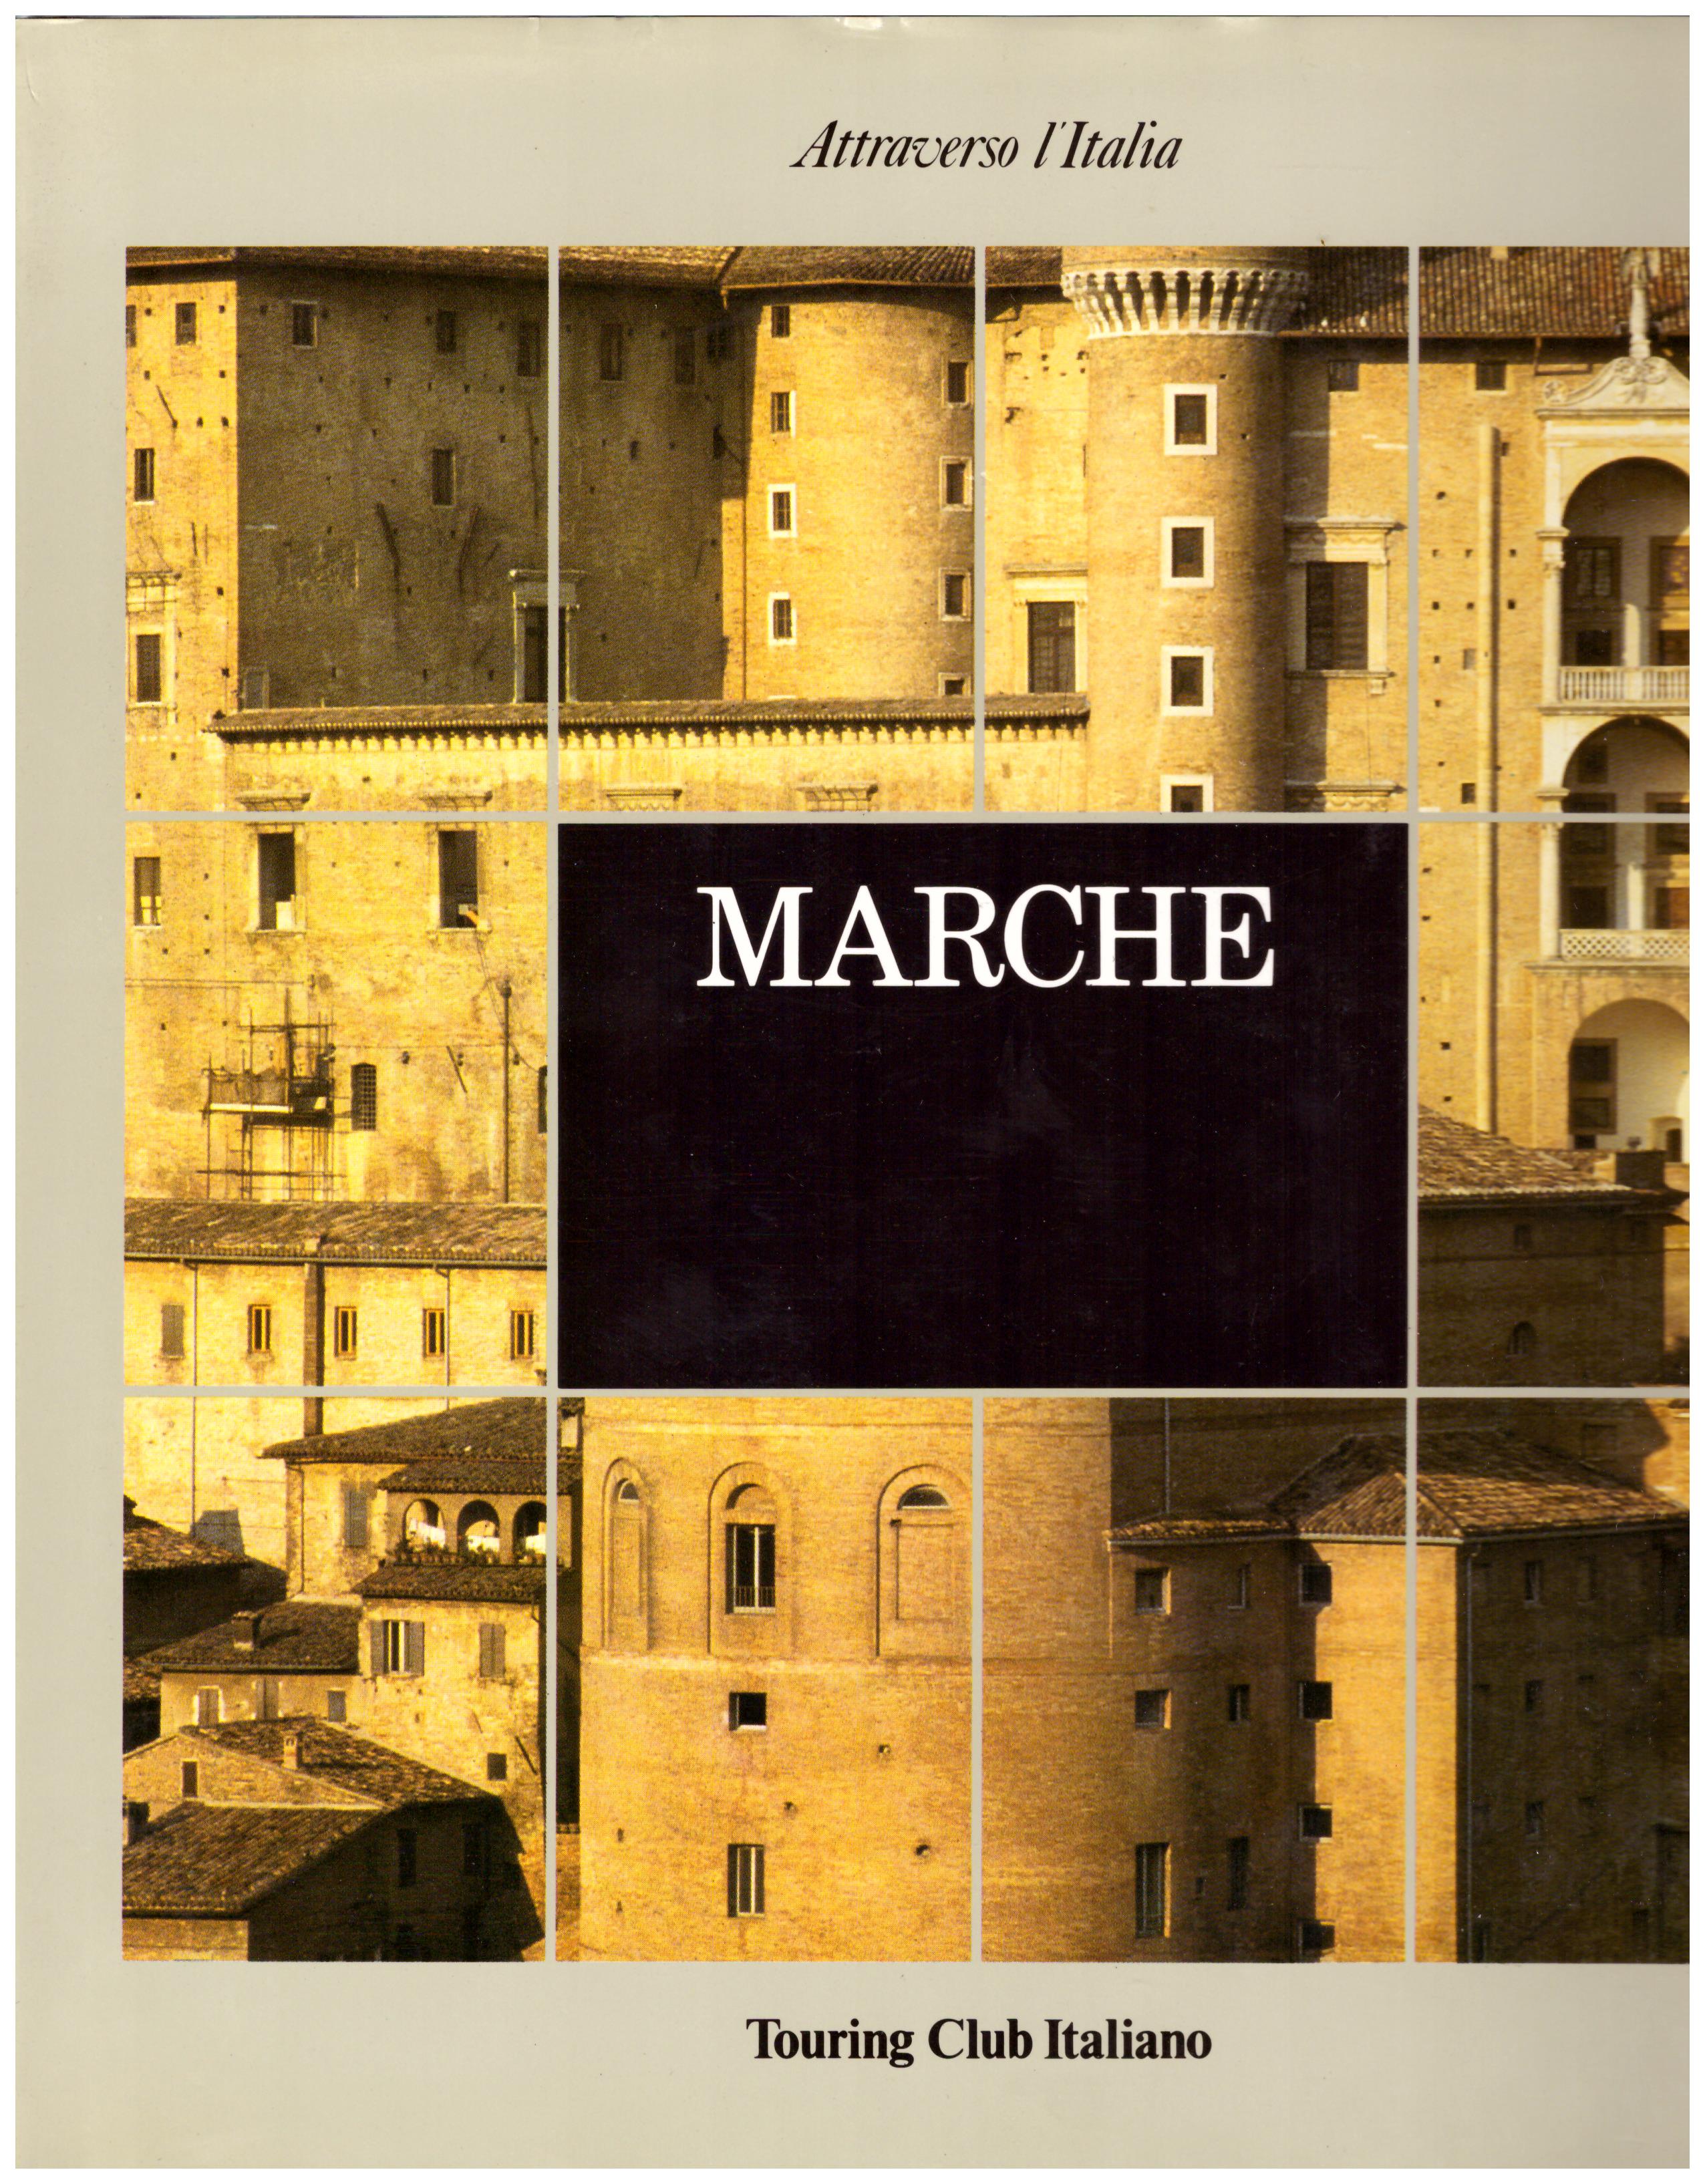 Titolo: Marche, attraverso l'Italia  Autore: AA.VV.   Editore: touring club italiano